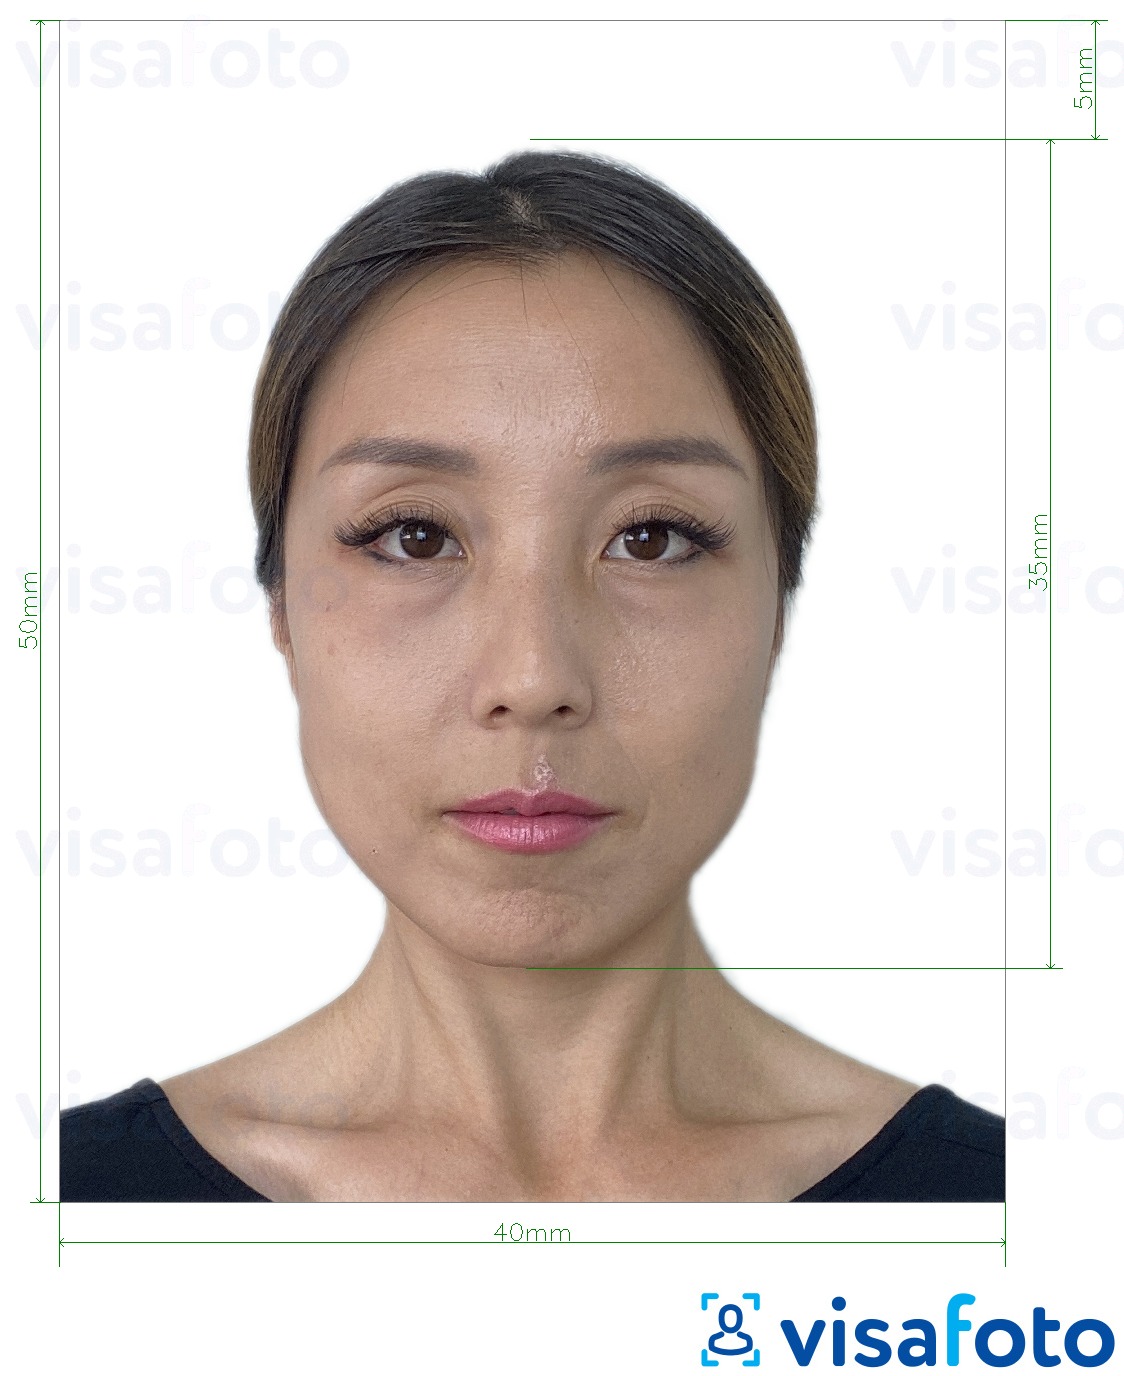 так көлөмү көрсөтүү менен Гонг-Конг Visa 40x50 мм (4x5 см) сүрөтү үлгүсү